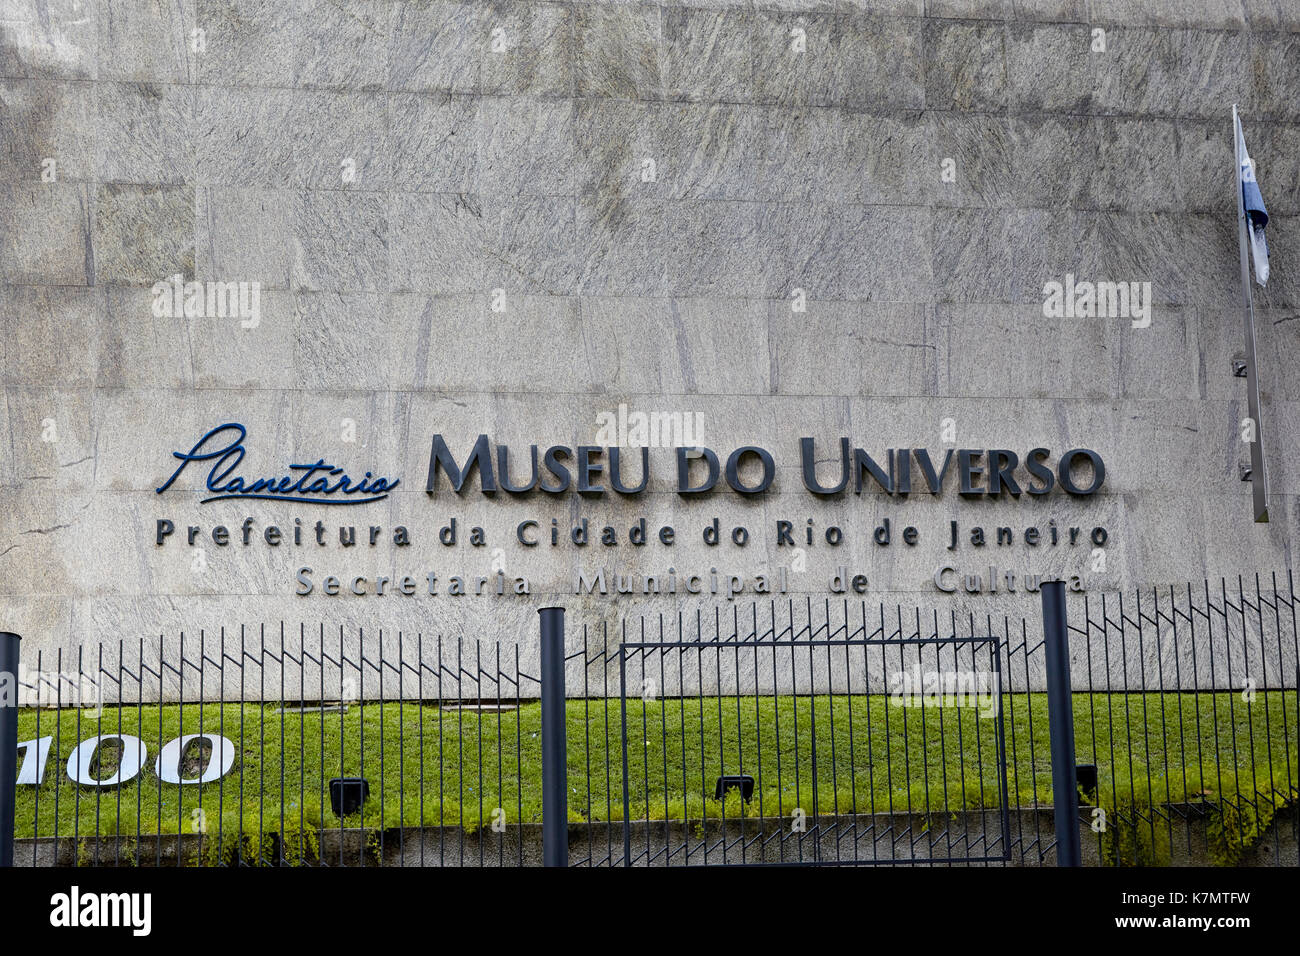 Museu do Universo (Musée de l'univers), Planetário do Rio (Planétarium de Rio), Rio de Janeiro, Brésil Banque D'Images